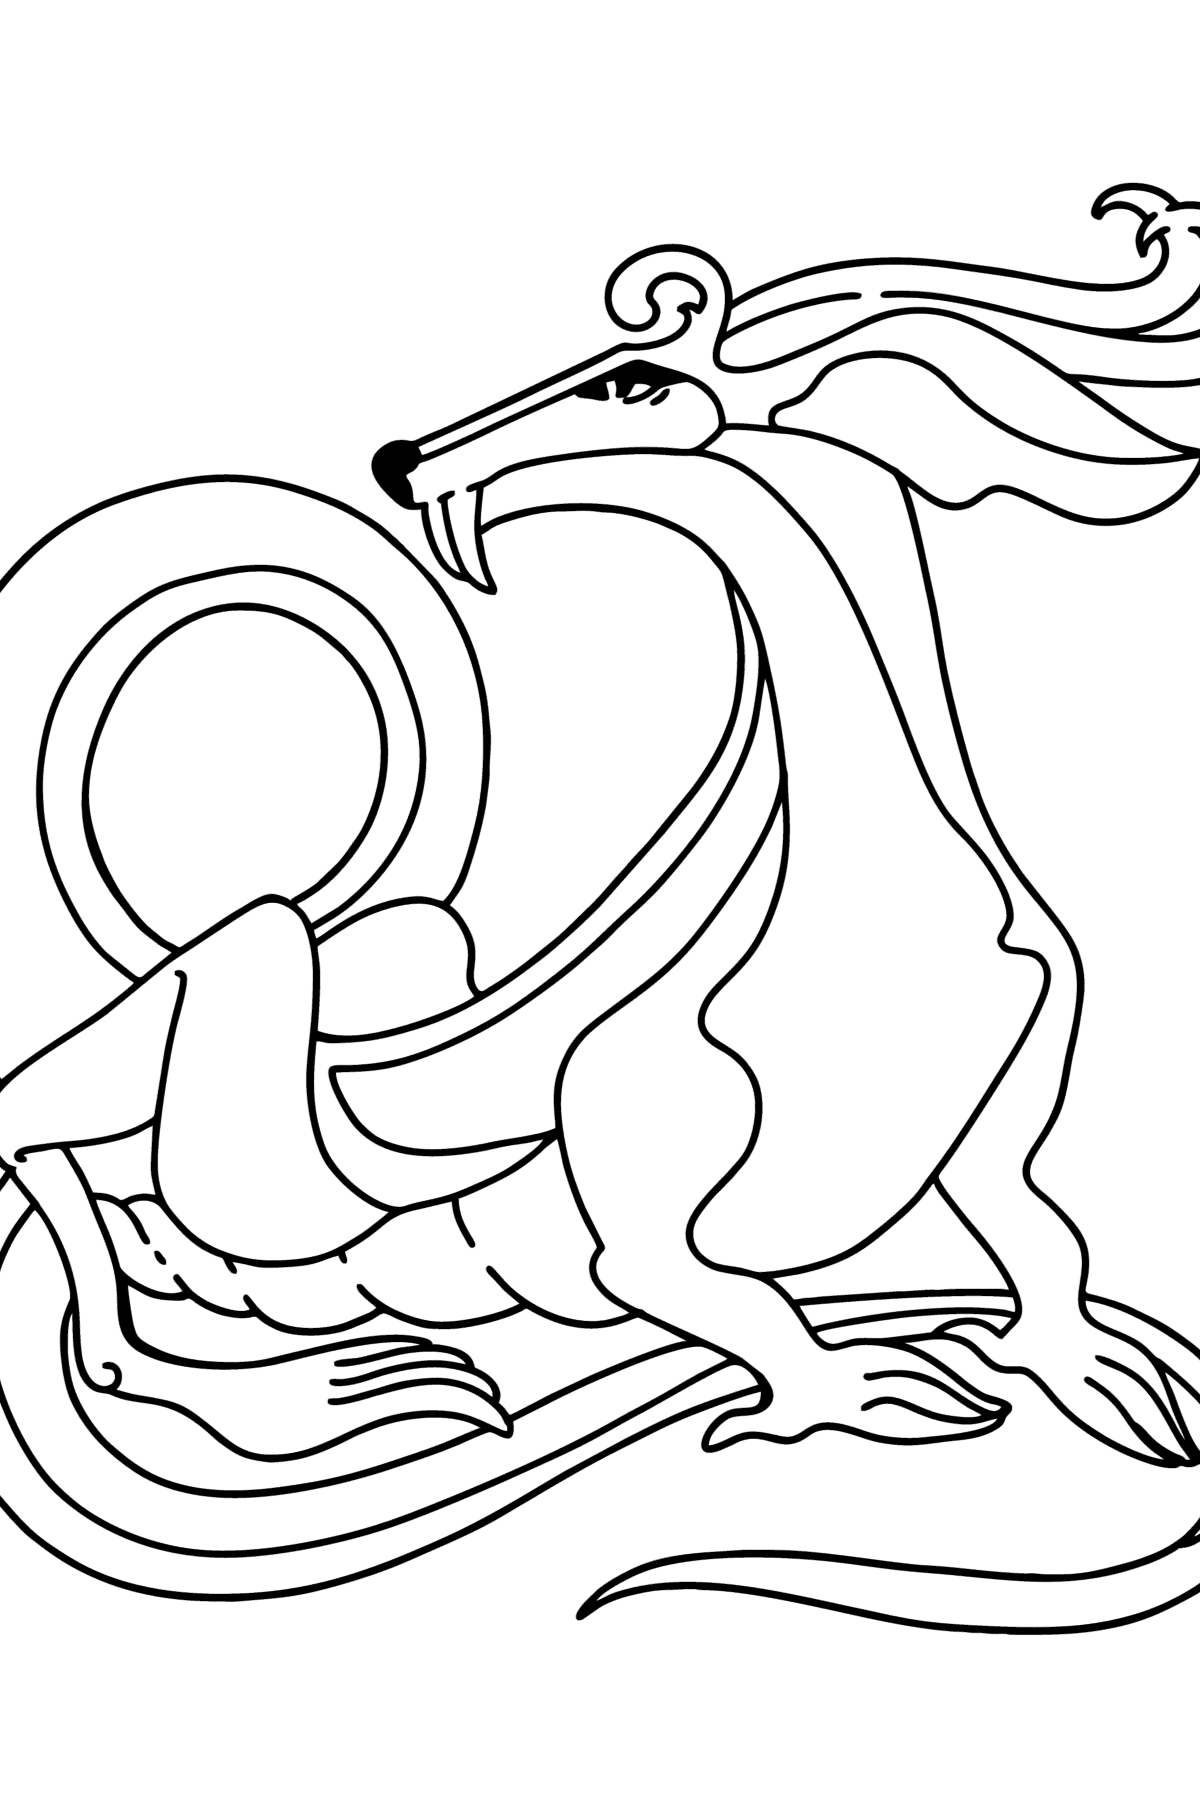 Desen de colorat dragon calm - Desene de colorat pentru copii